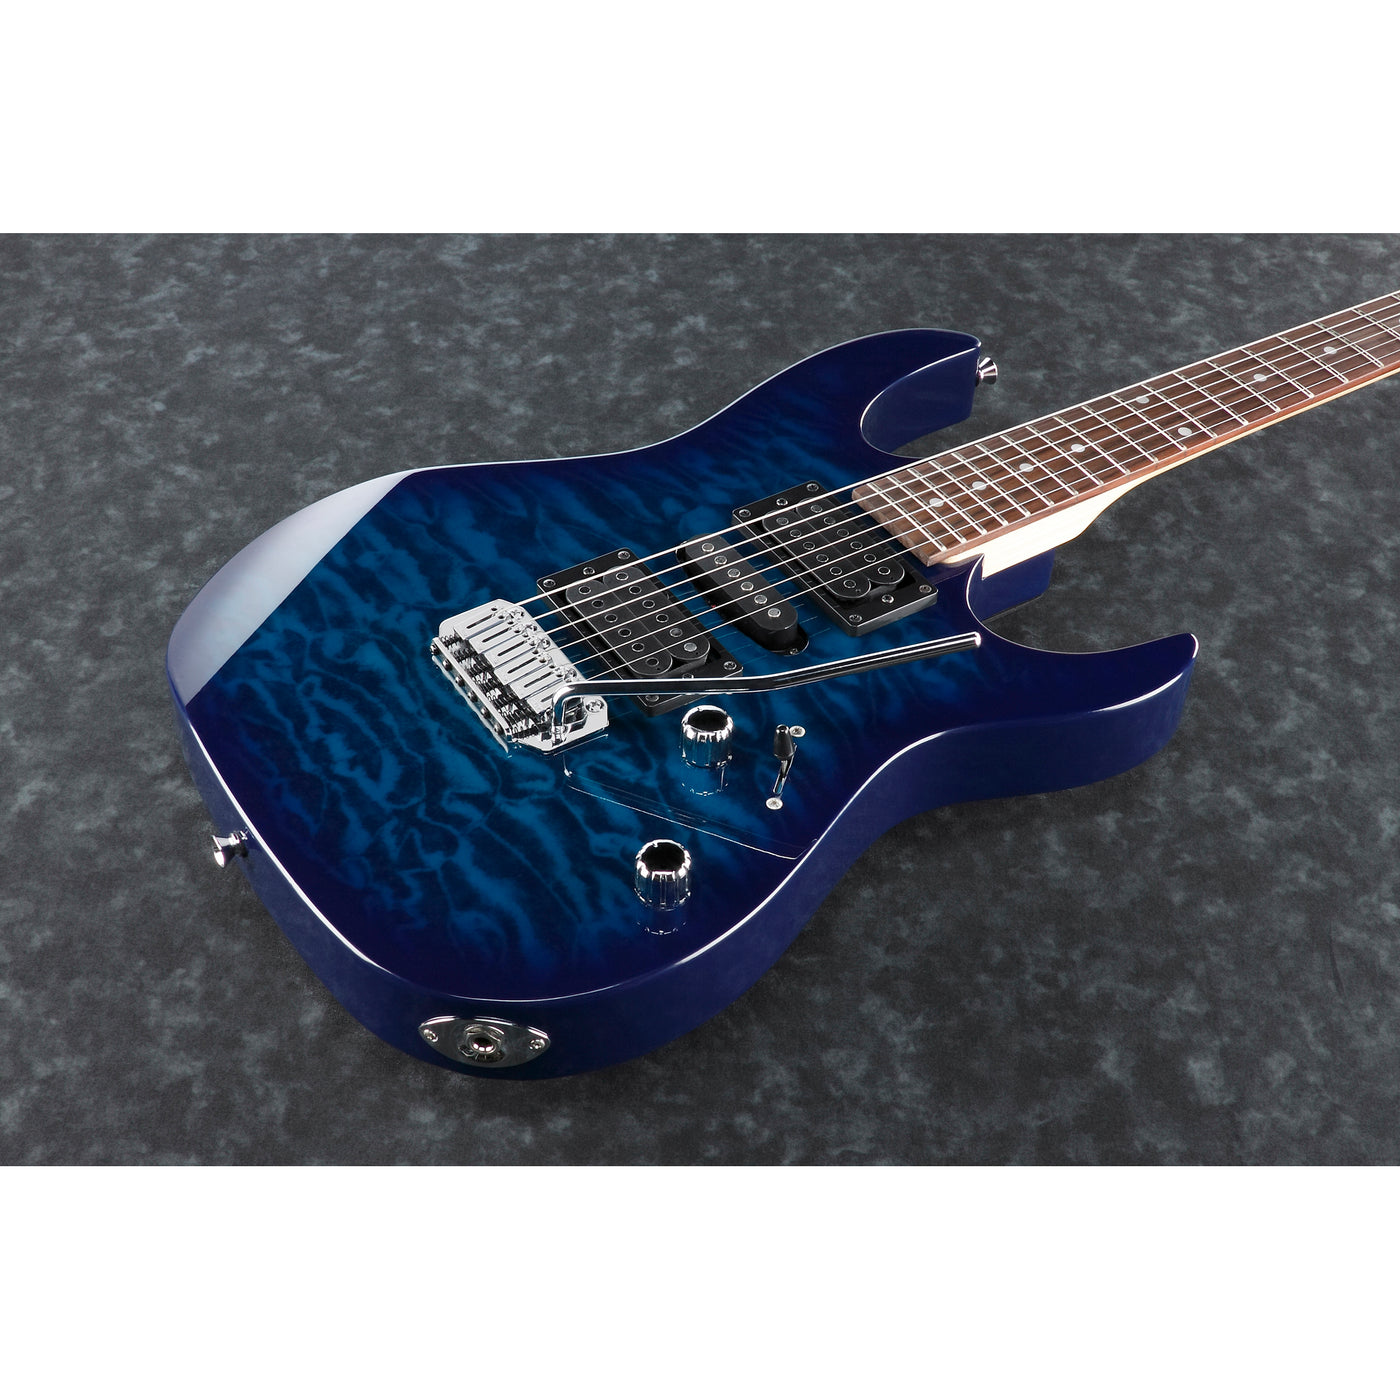 Omega Music  IBANEZ GRX70QATBB Gio Bleu Guitare électrique